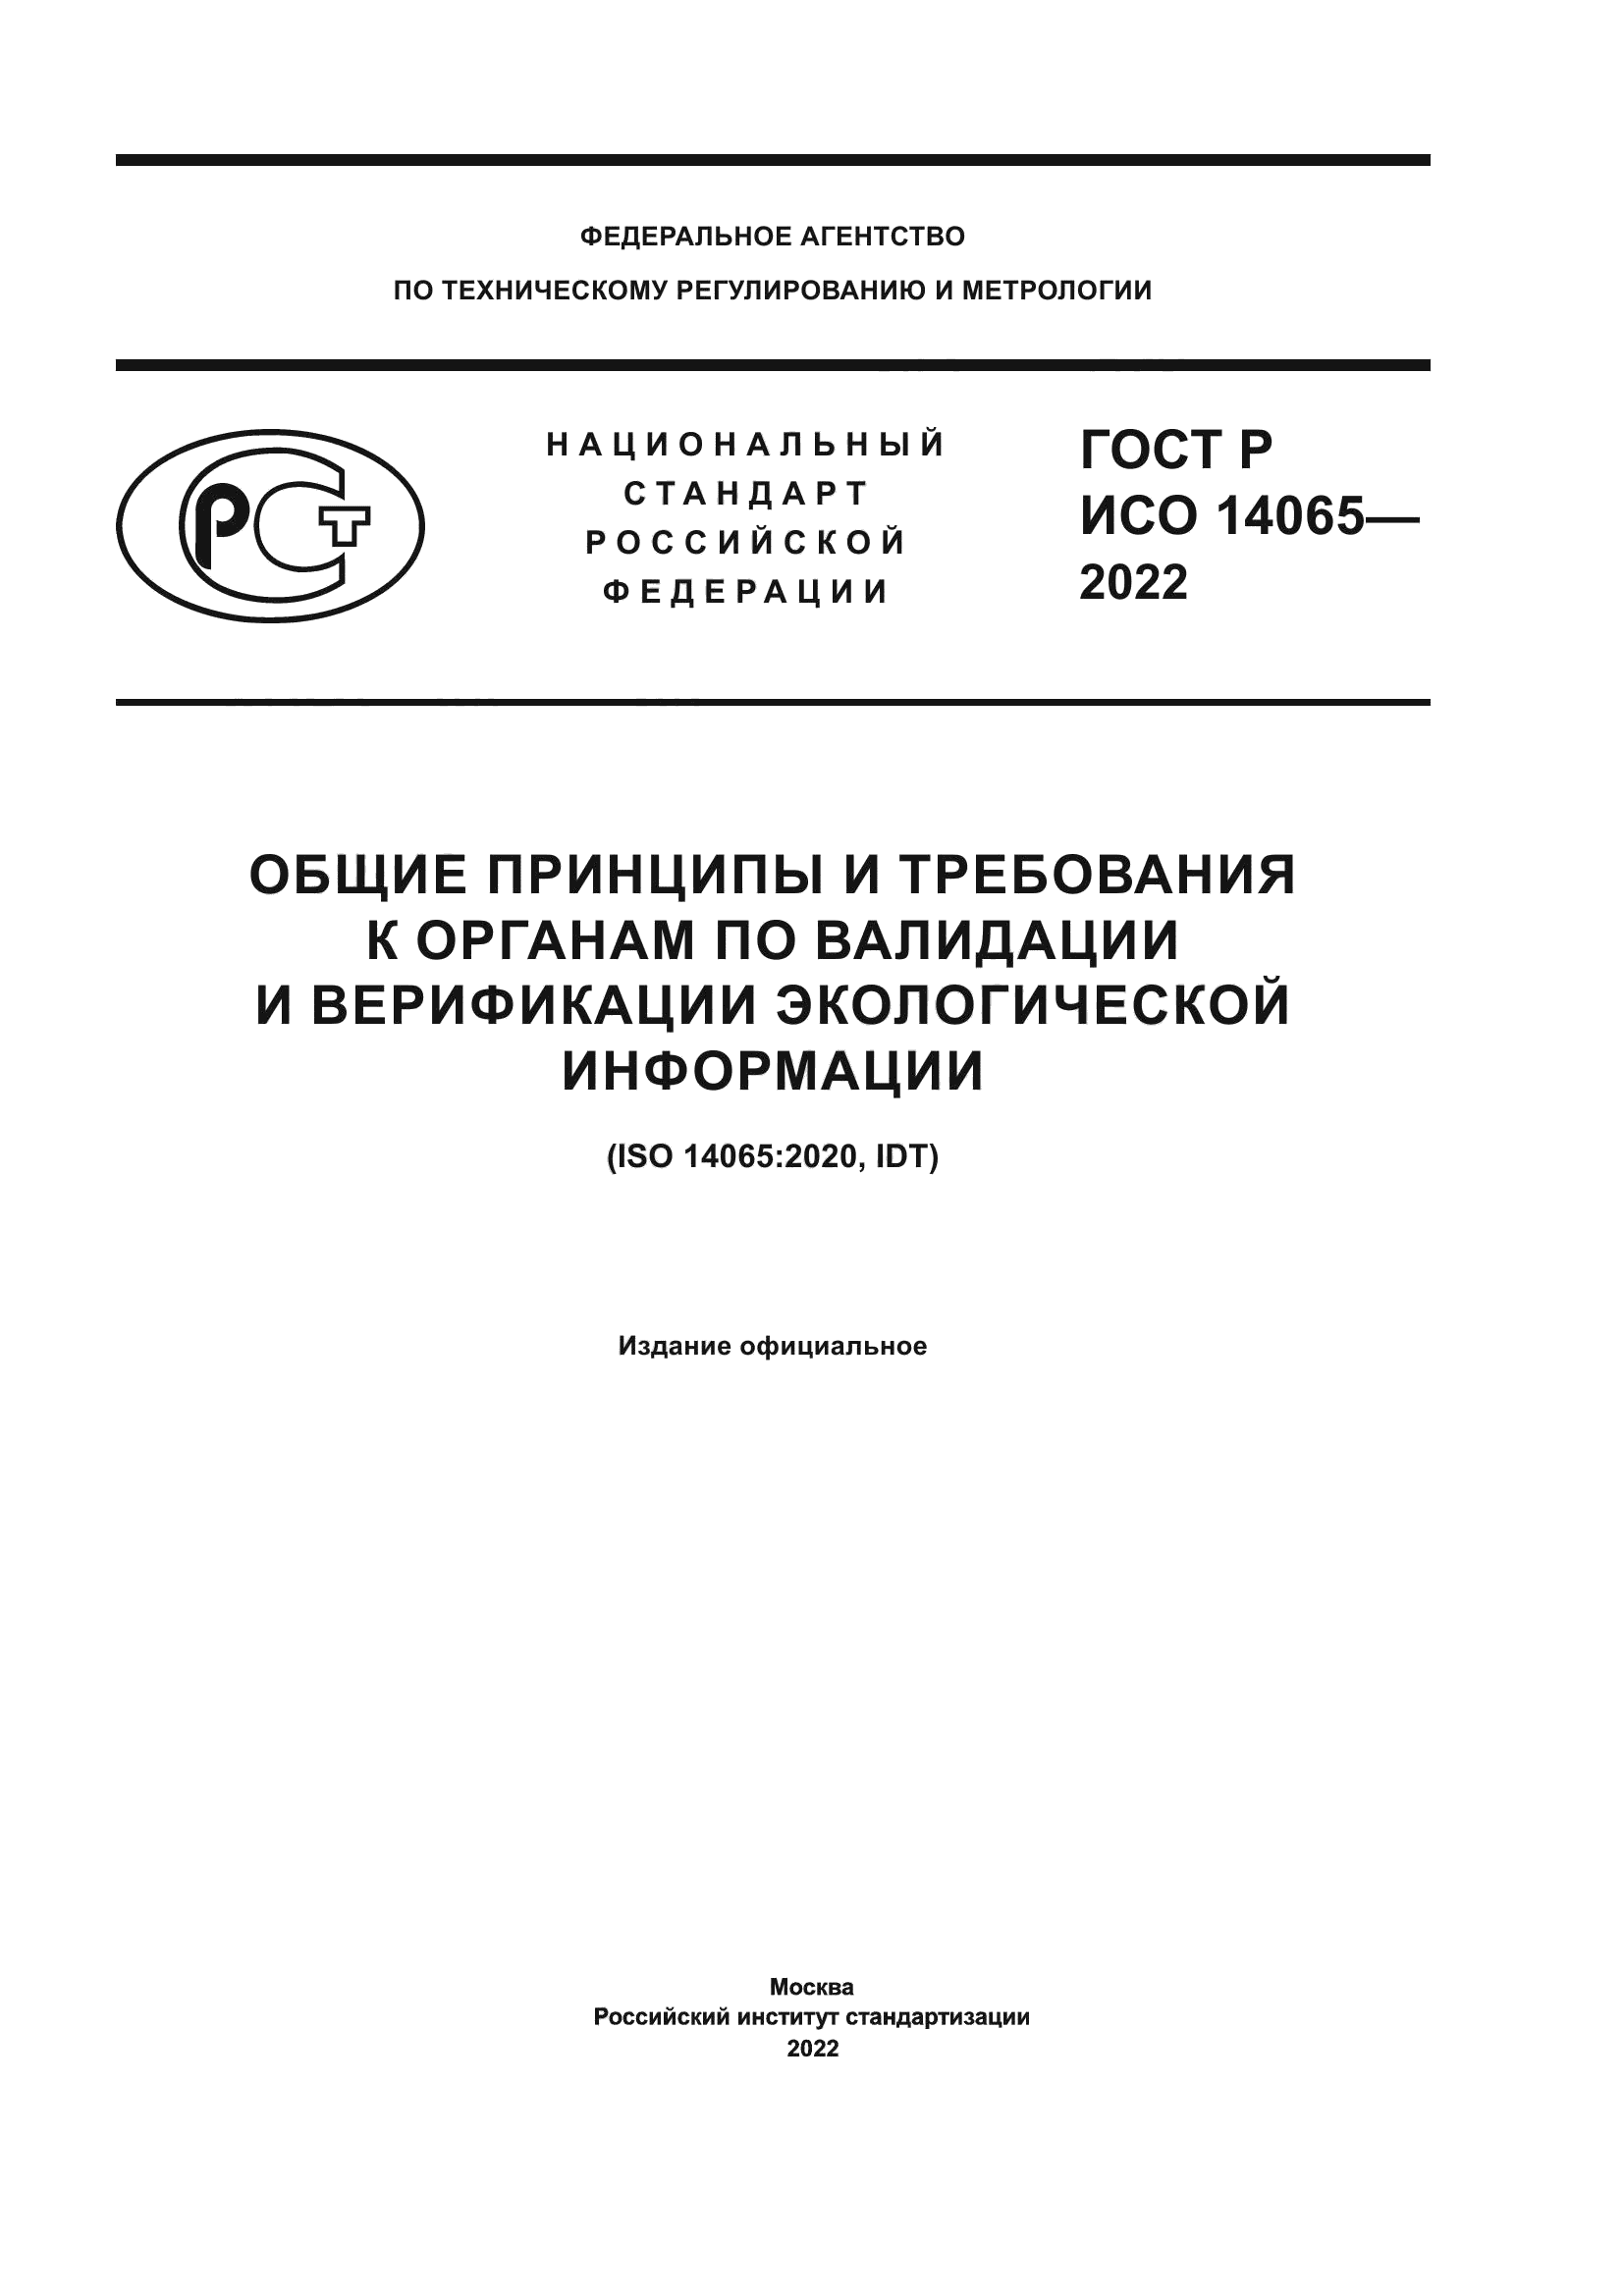 ГОСТ Р ИСО 14065-2022